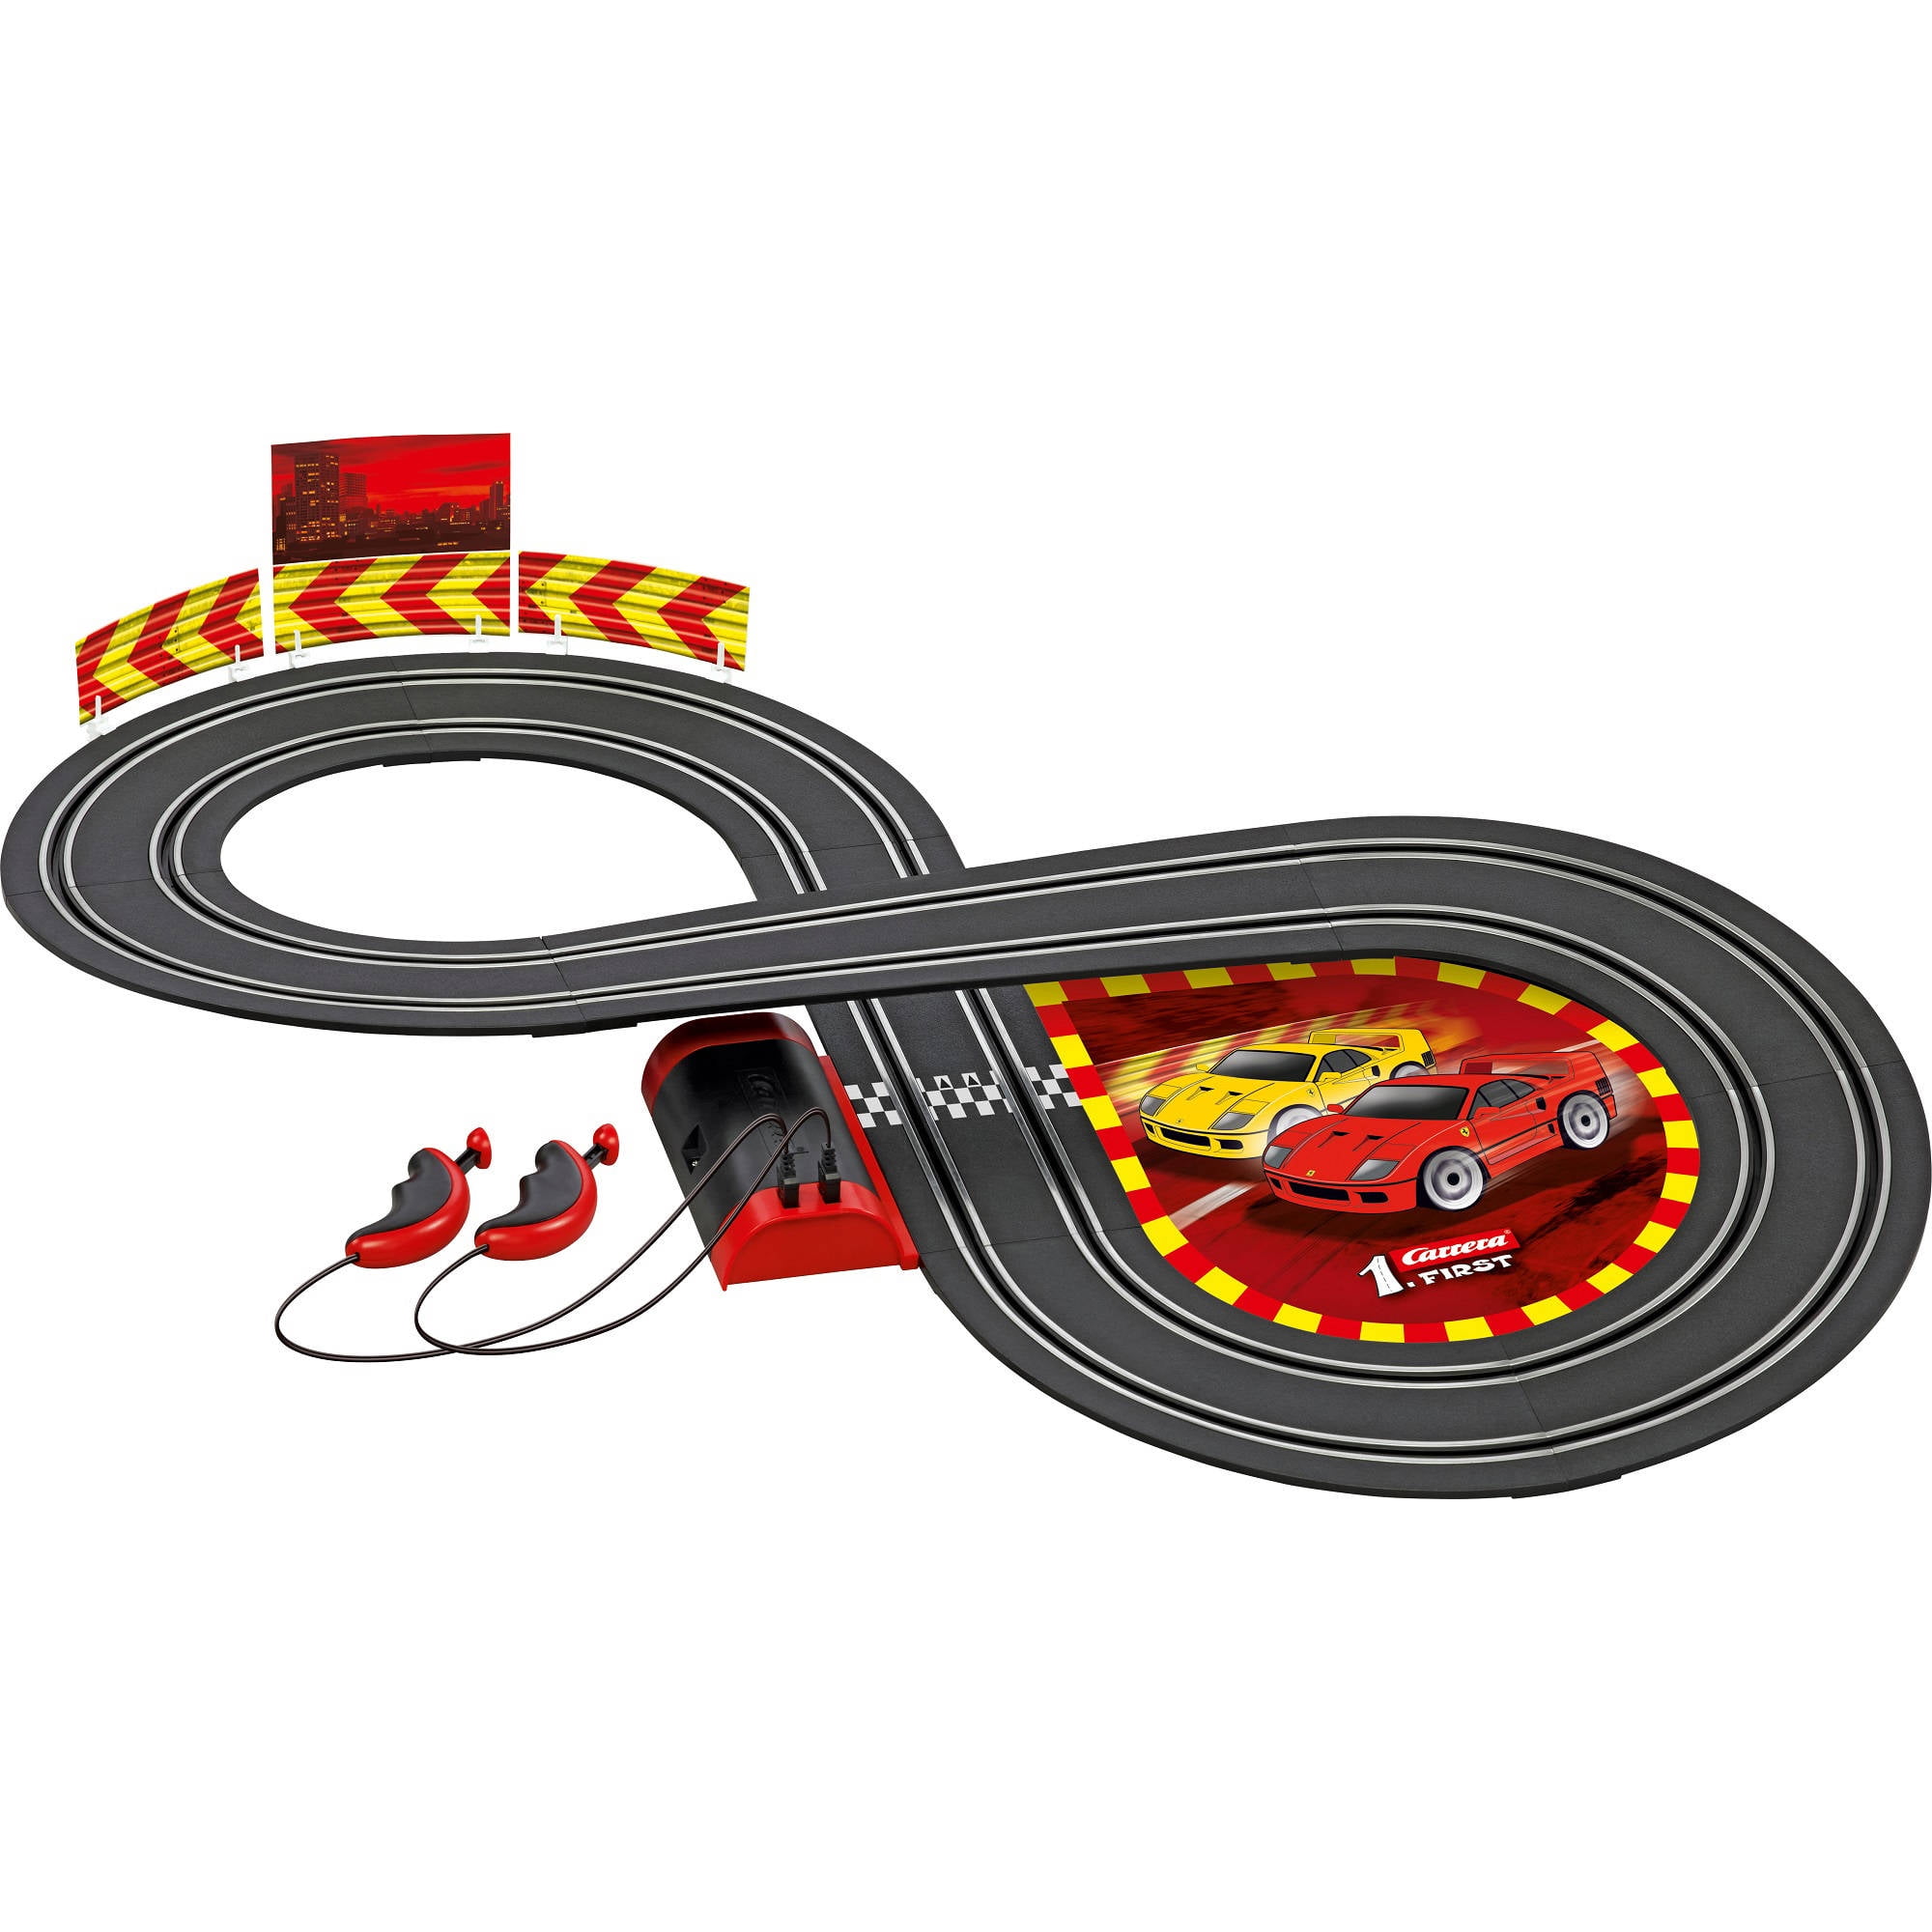 Carrera First Disney Pixar Cars 3 Rennstrecke Autorennbahn 2,4 Meter Auto Film 